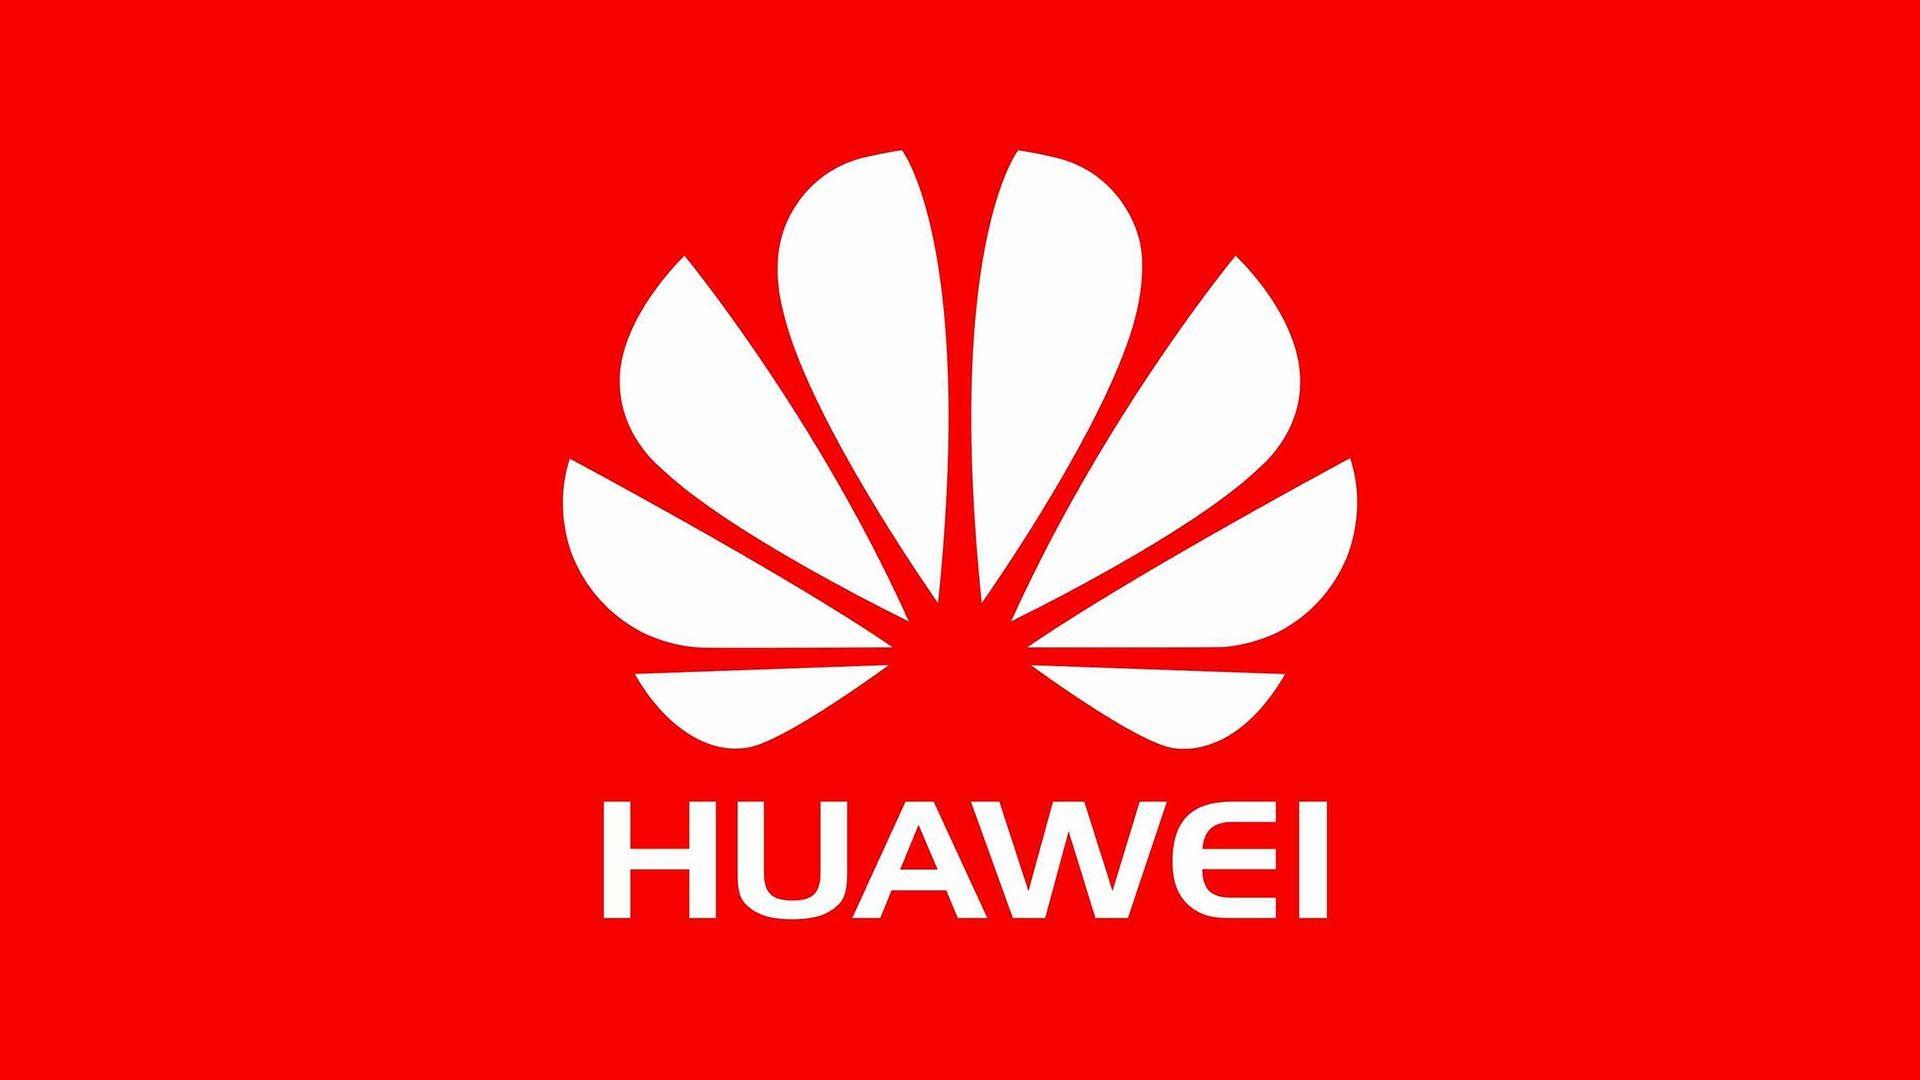 Huawei Logo Wallpapers - Top Free Huawei Logo Backgrounds ...